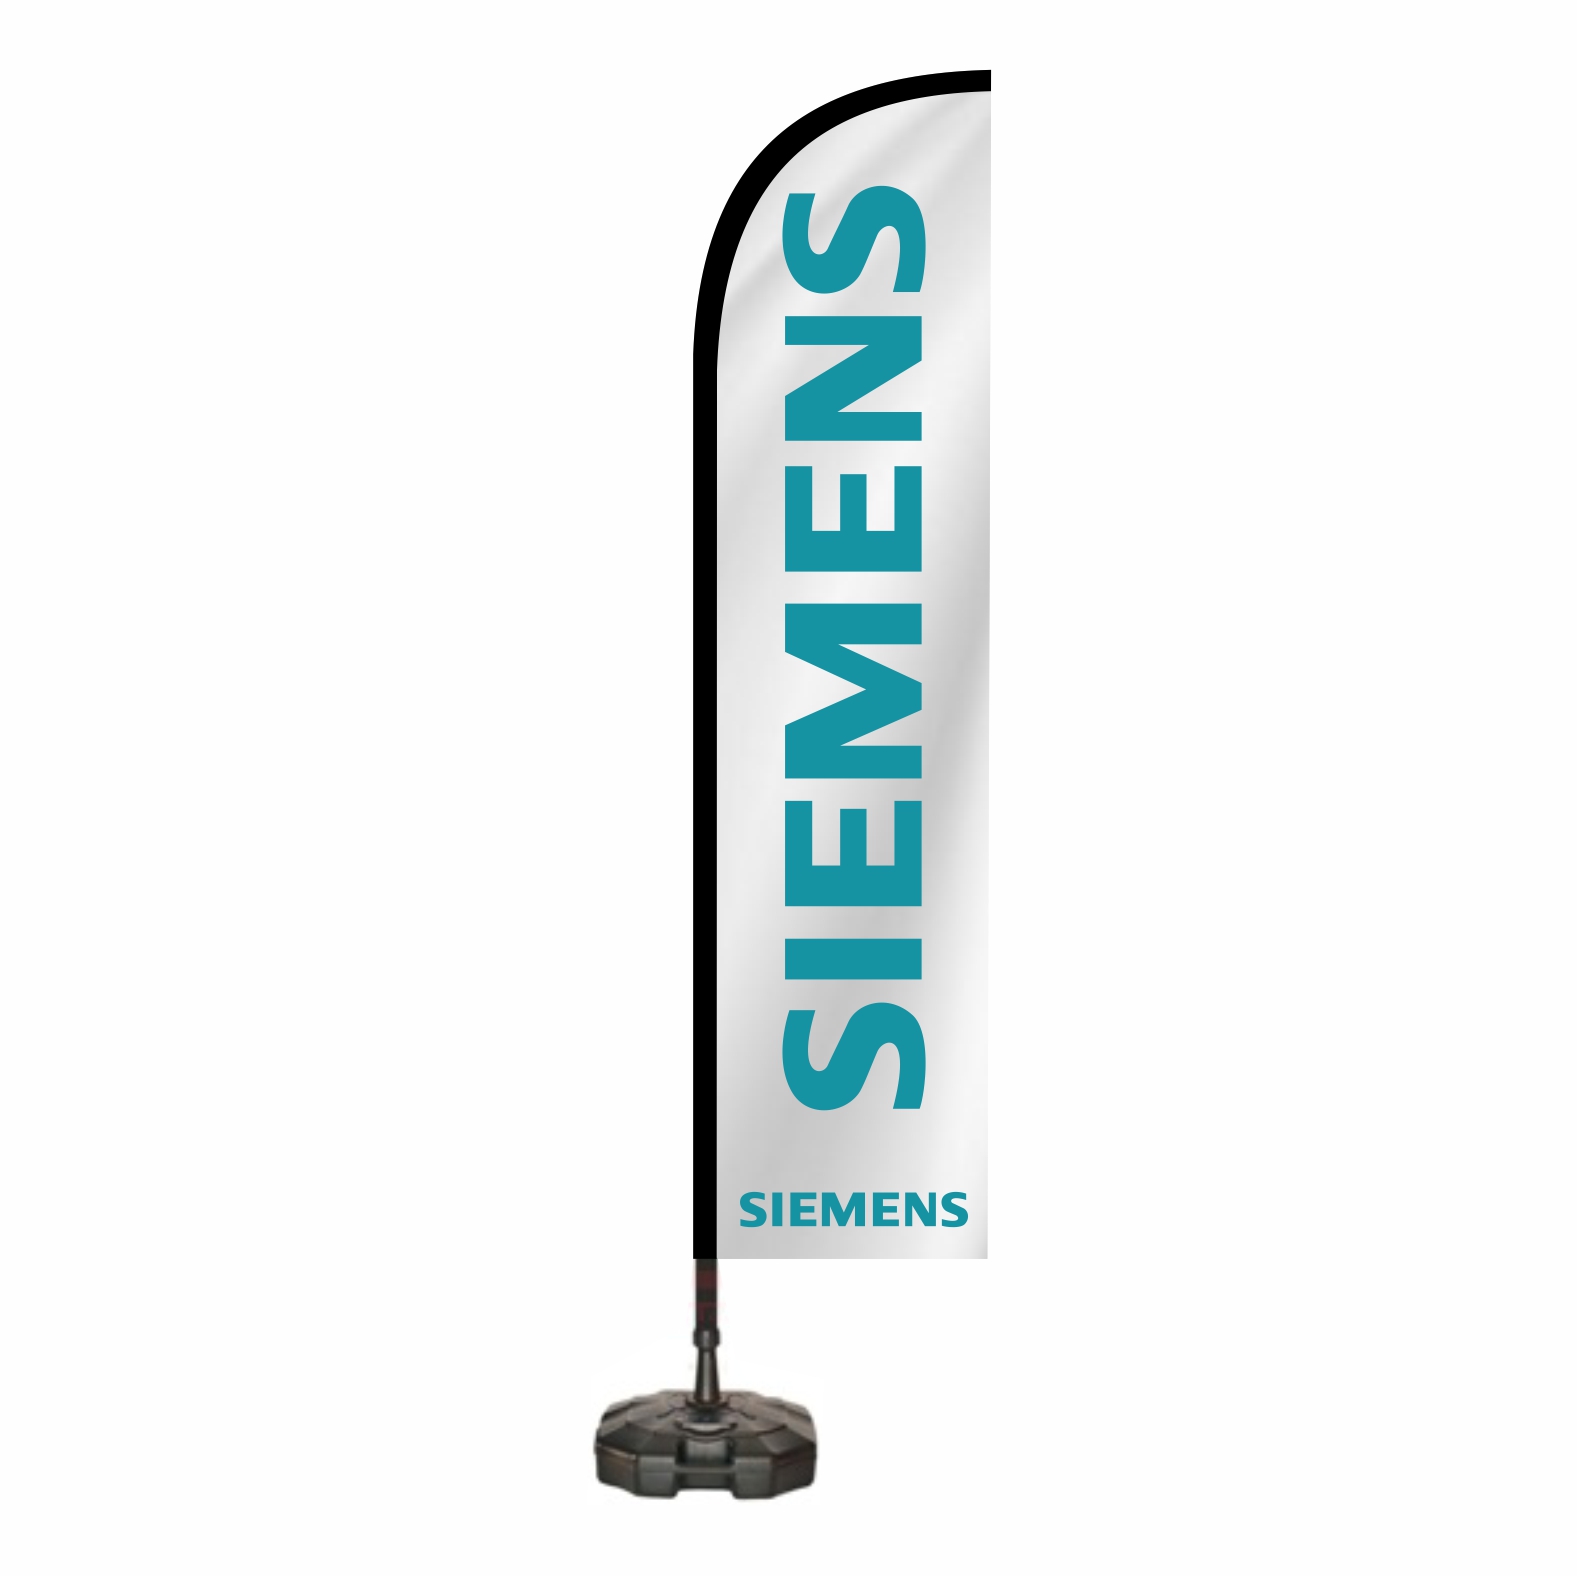 Siemens Oltal Bayra lleri